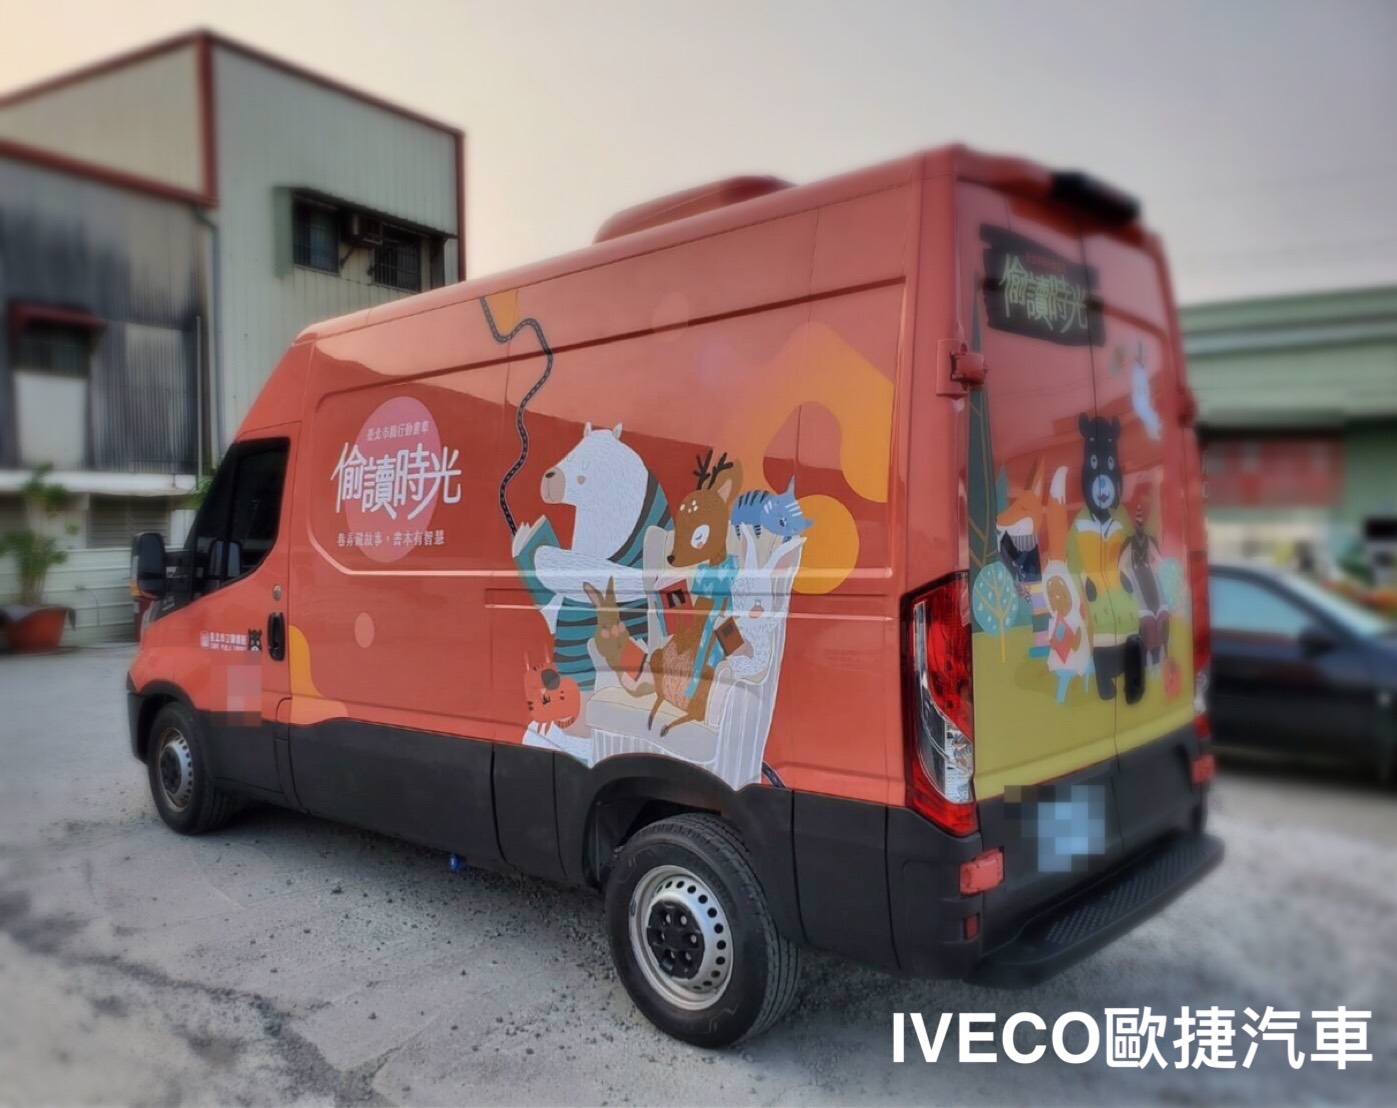 台北市立圖書館行動書車-iveco行動改裝